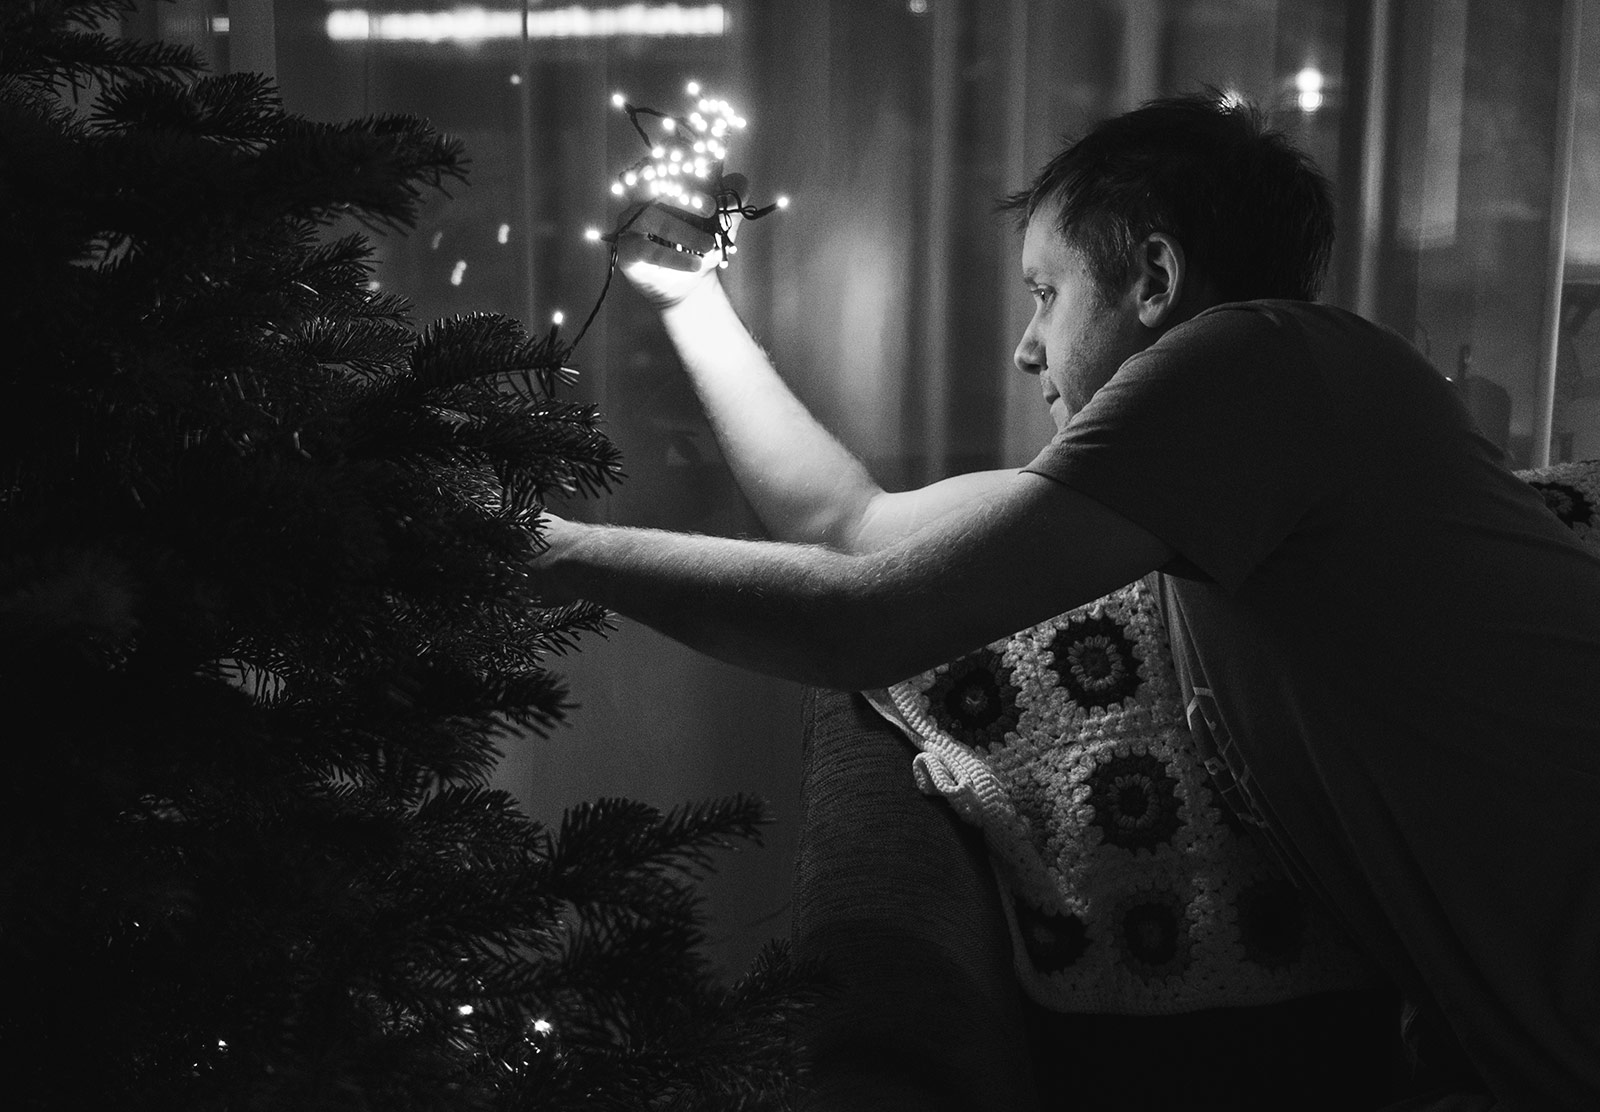 Man putting lights on Christmas tree